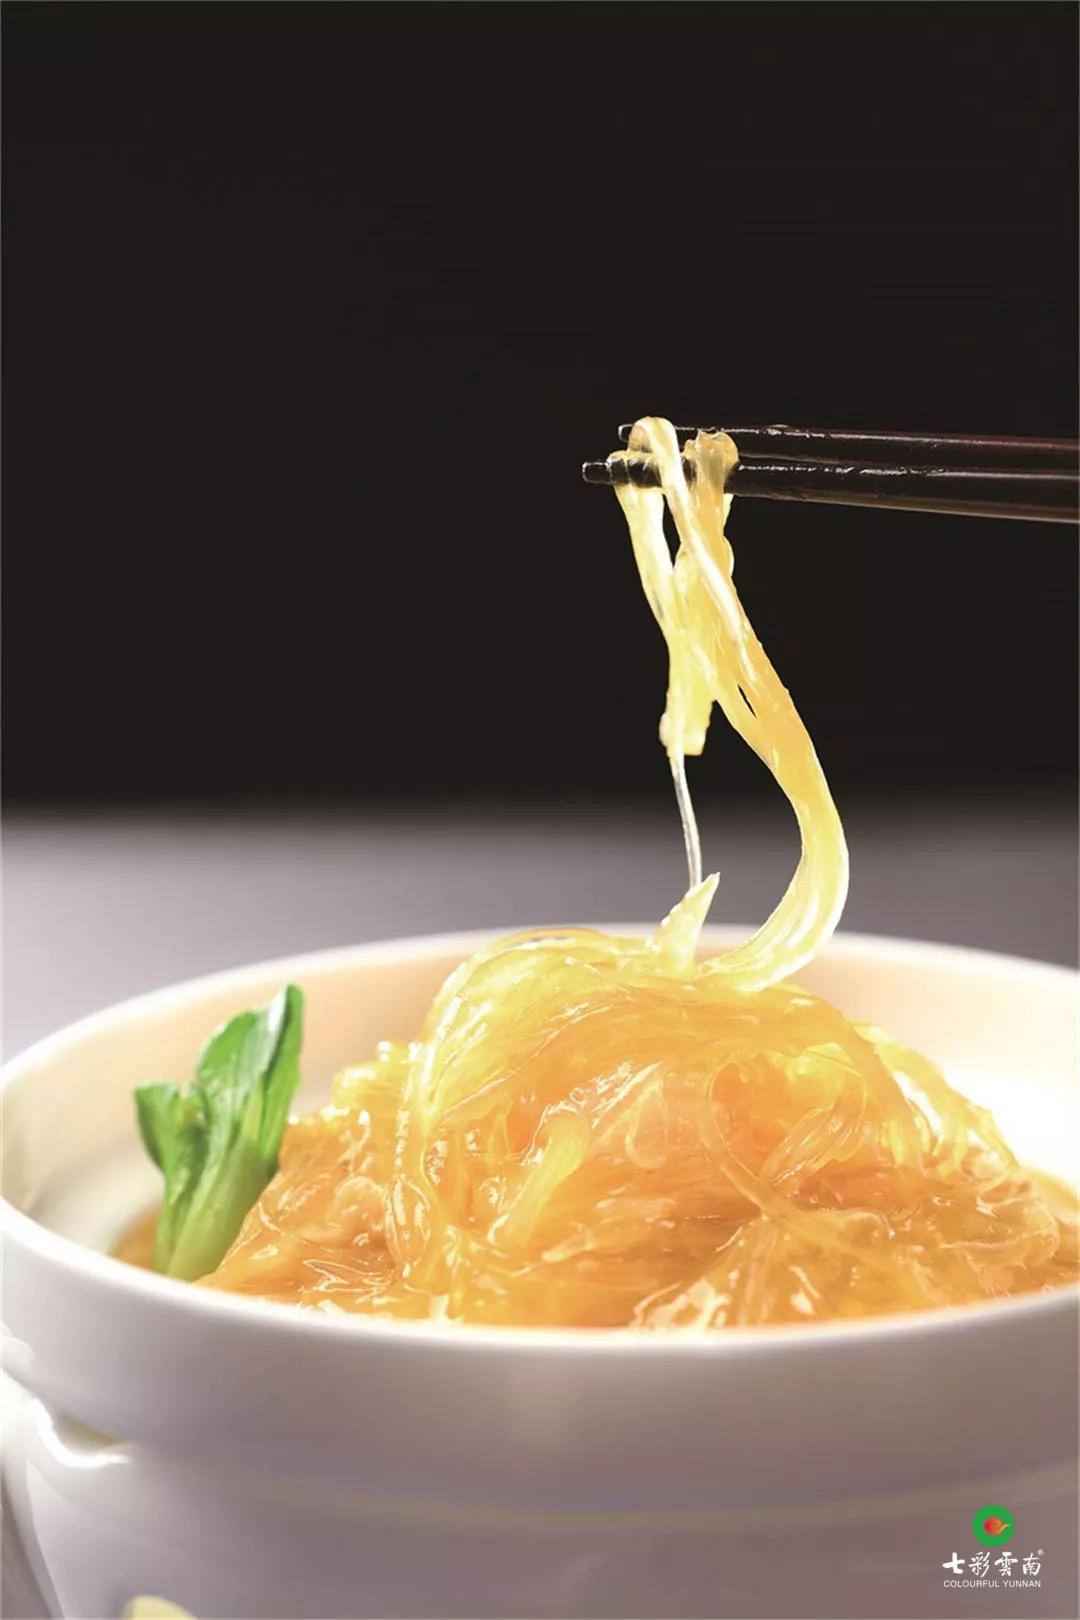 汤鱼翅如果你注重美食视觉和味觉的双重享受松露鲍汁鱼翅美食中低调的